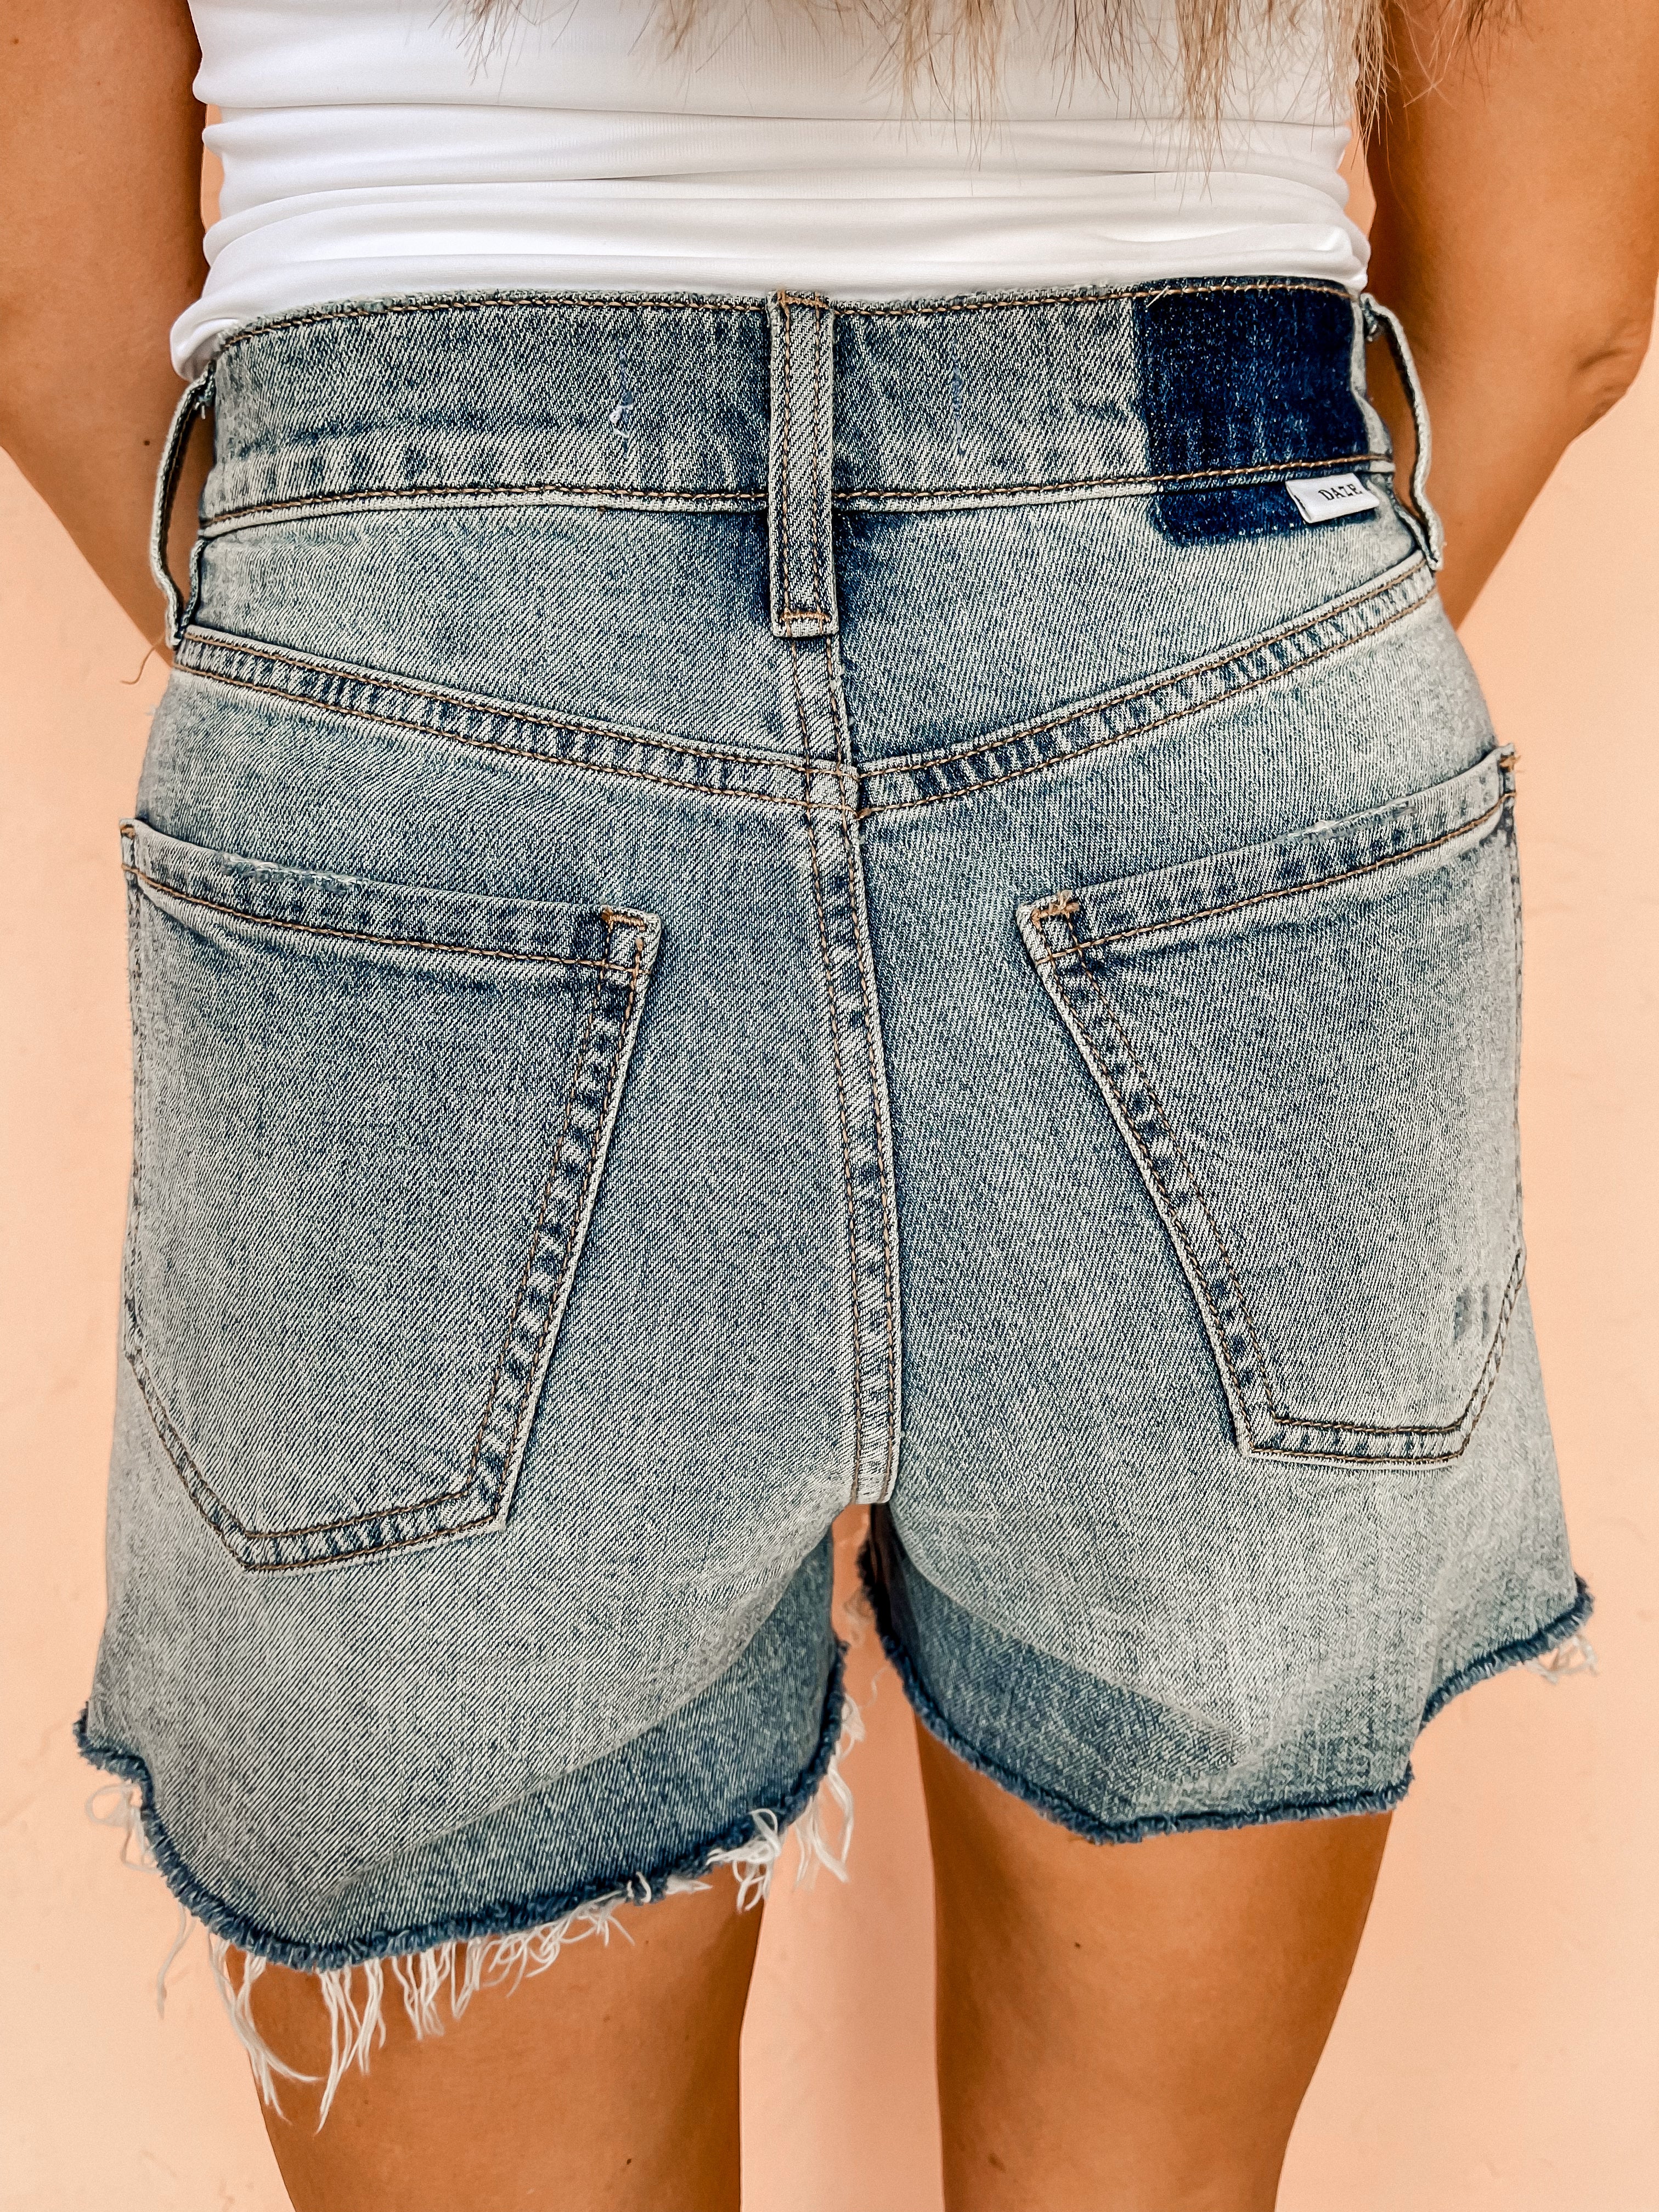 [DAZE] Bottom Line Denim Shorts-Time Out Vintage